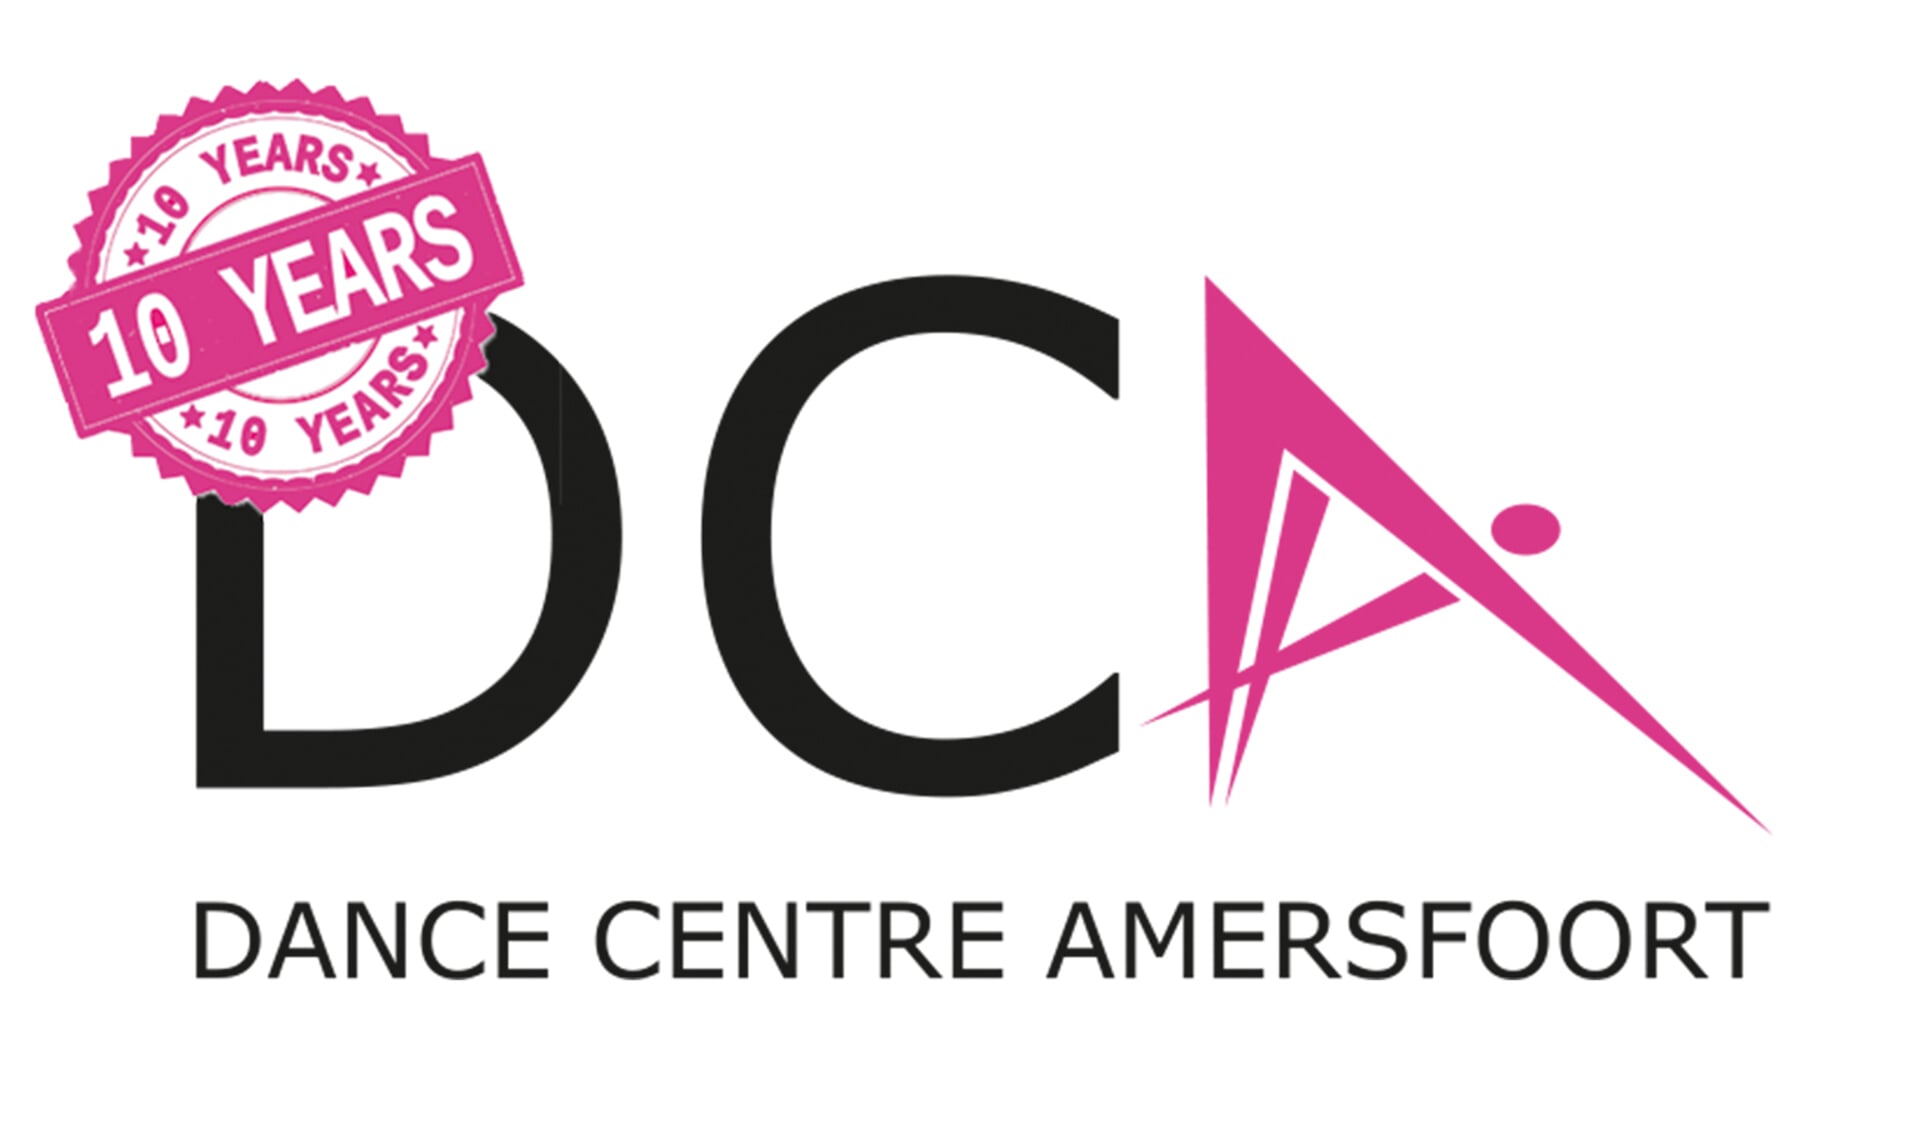 Dance Centre Amersfoort bestaat 10 jaar!